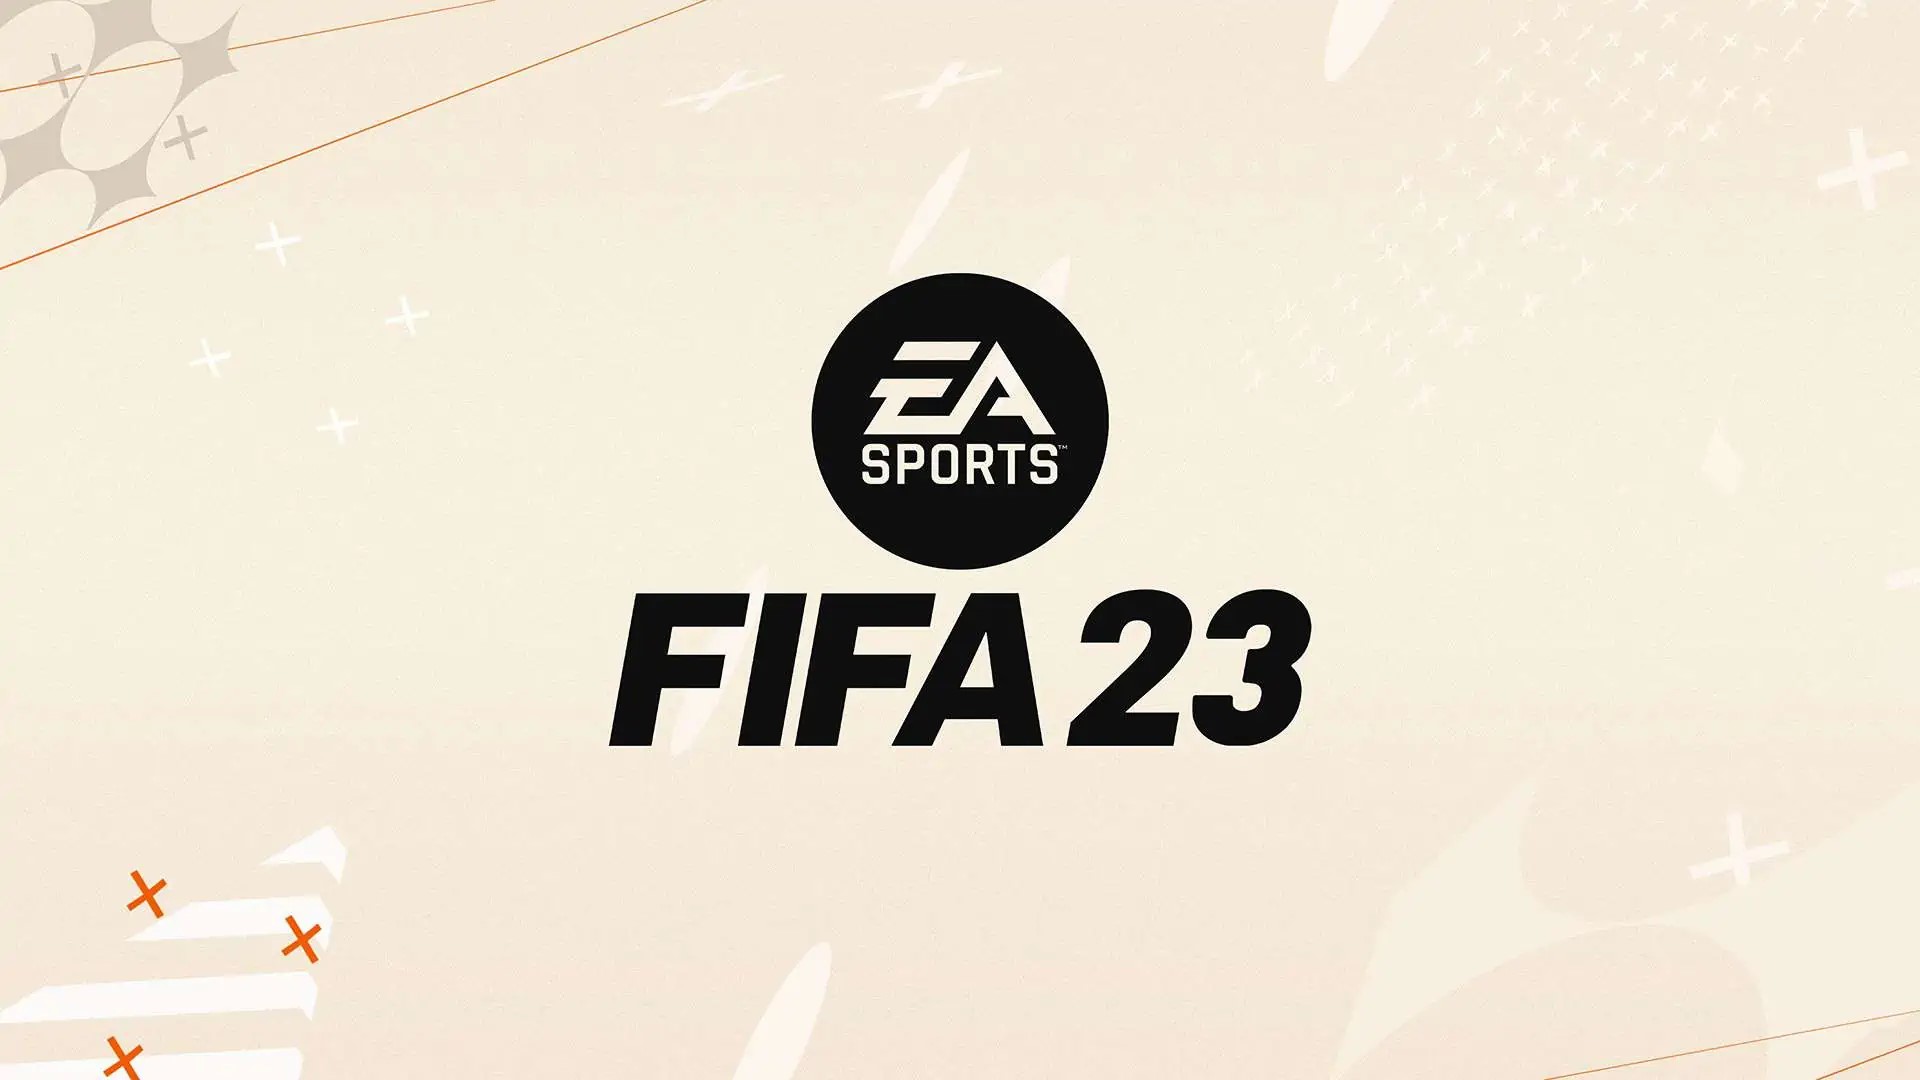 معرفی بازیکنان برتر بازی FIFA 23 توسط الکترونیک آرتز